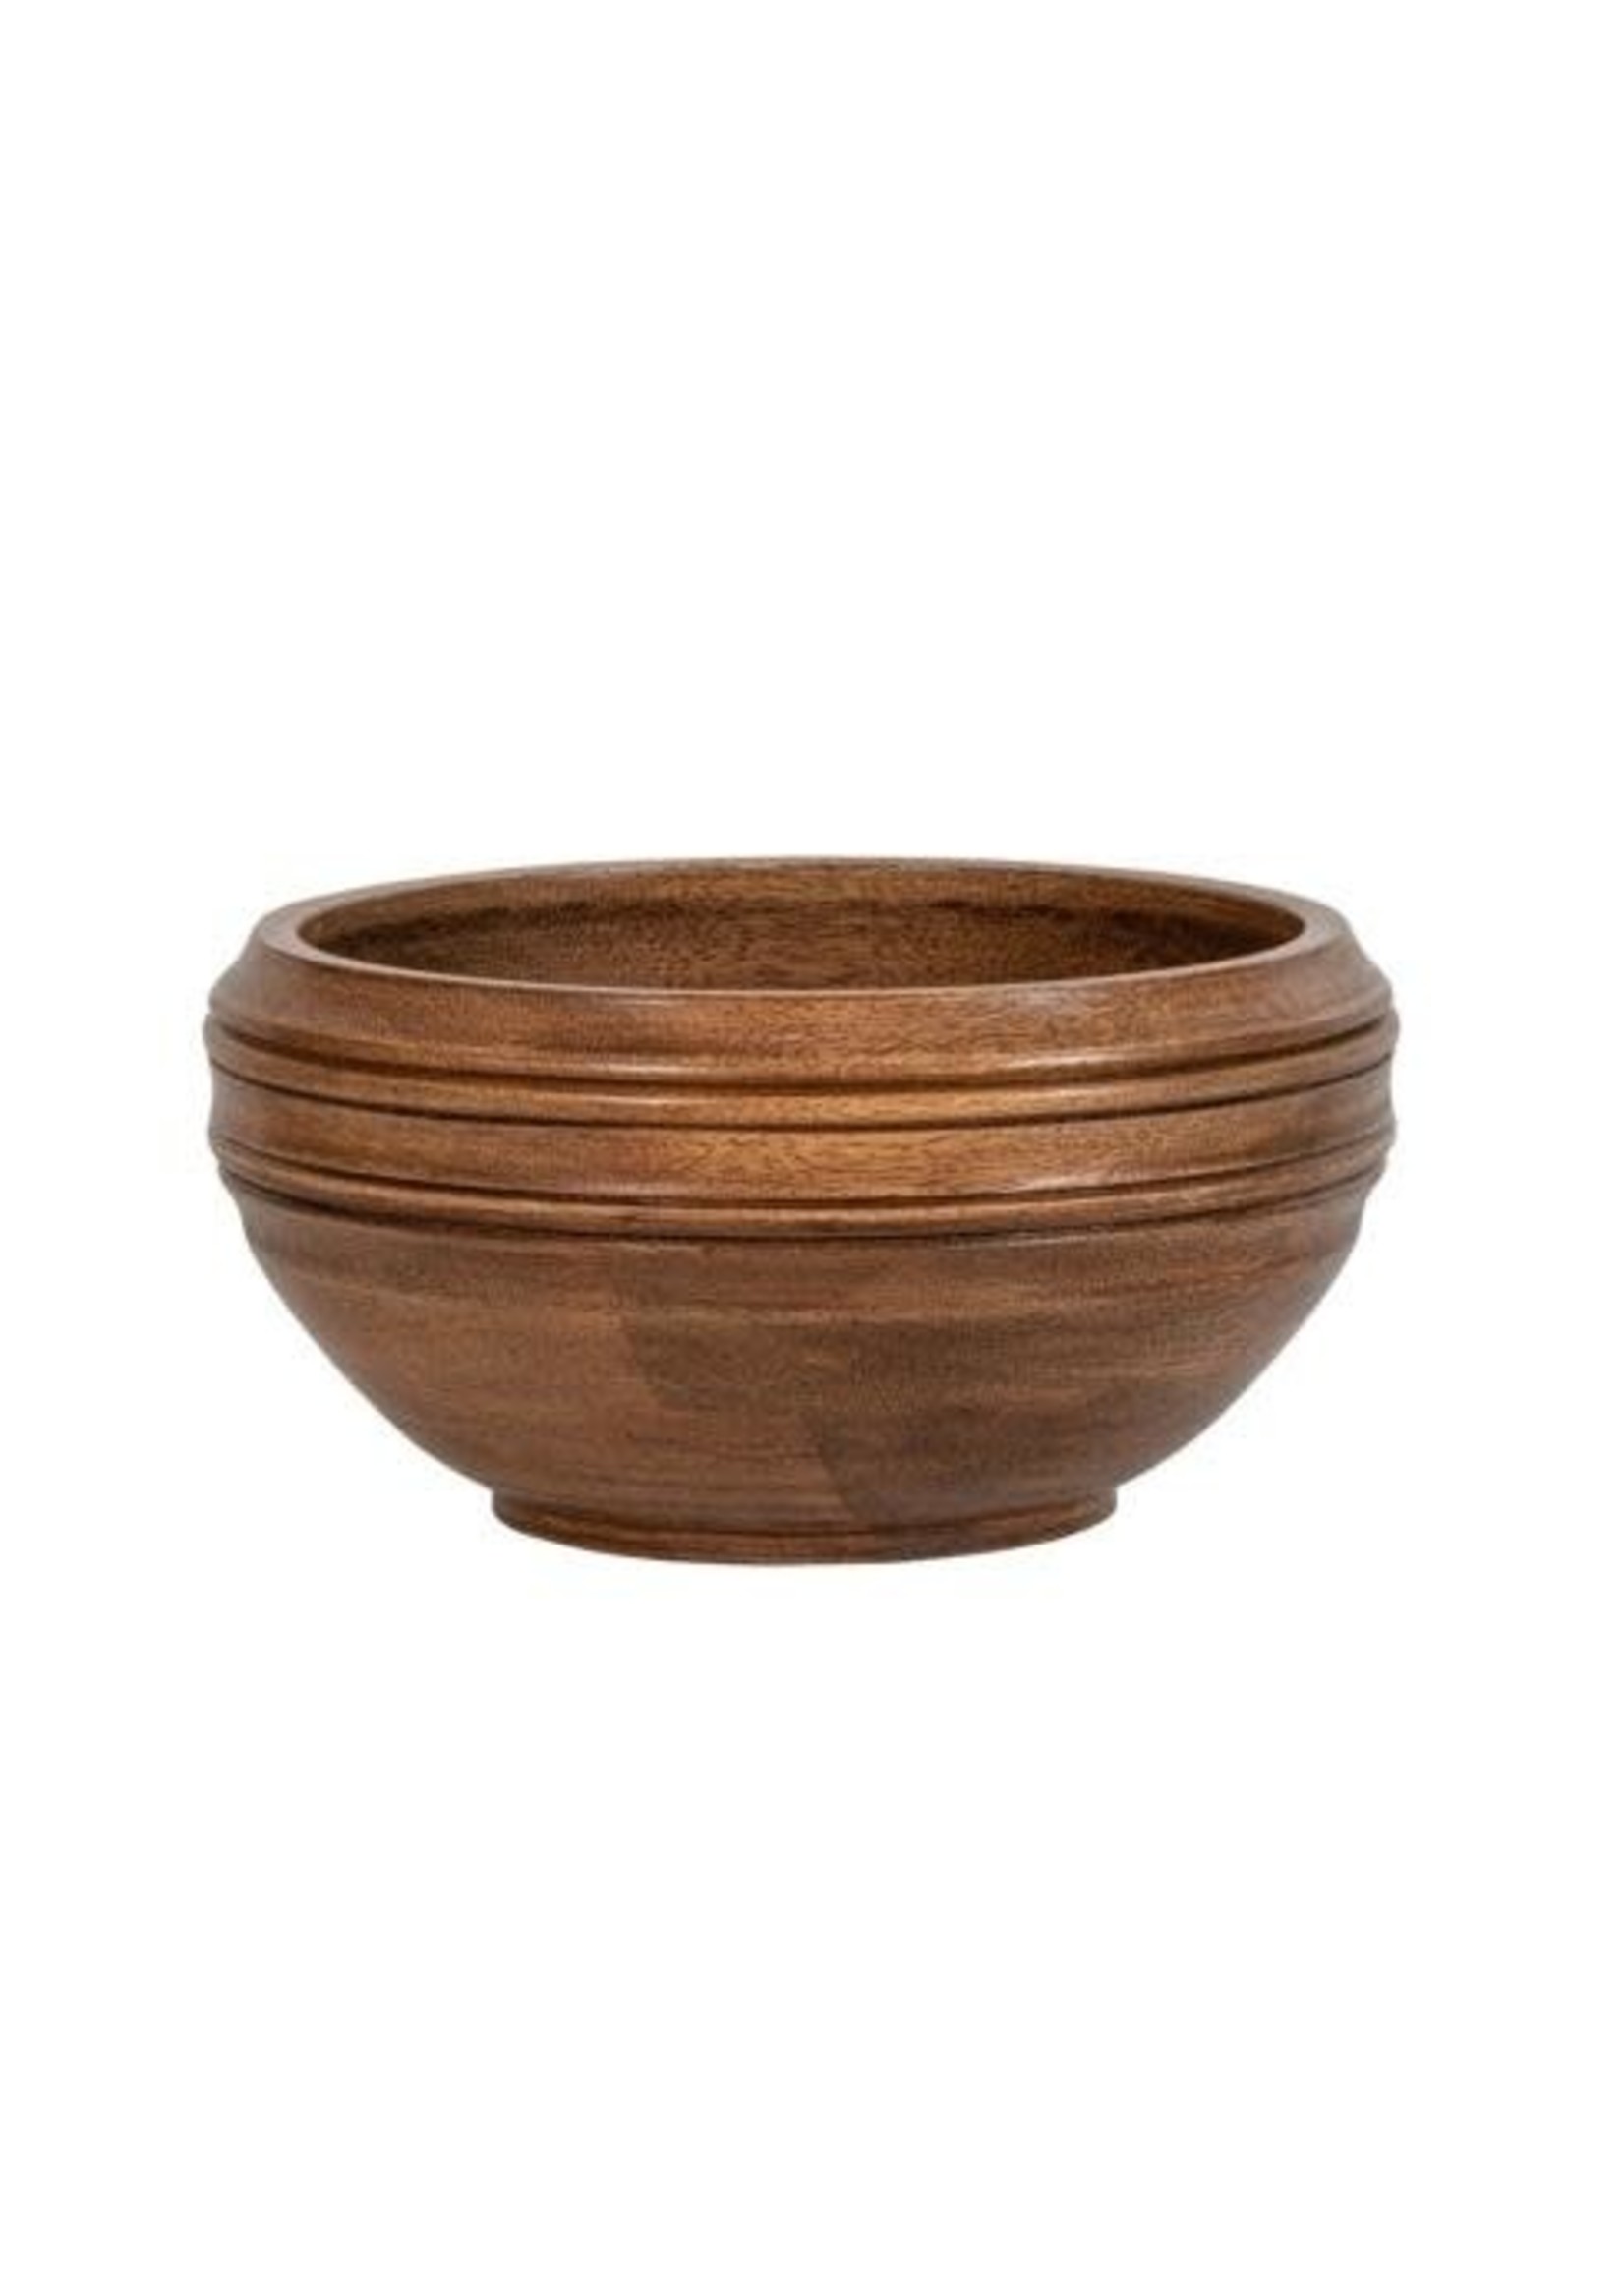 Juliska Bilbao 10" Wood Serving Bowl